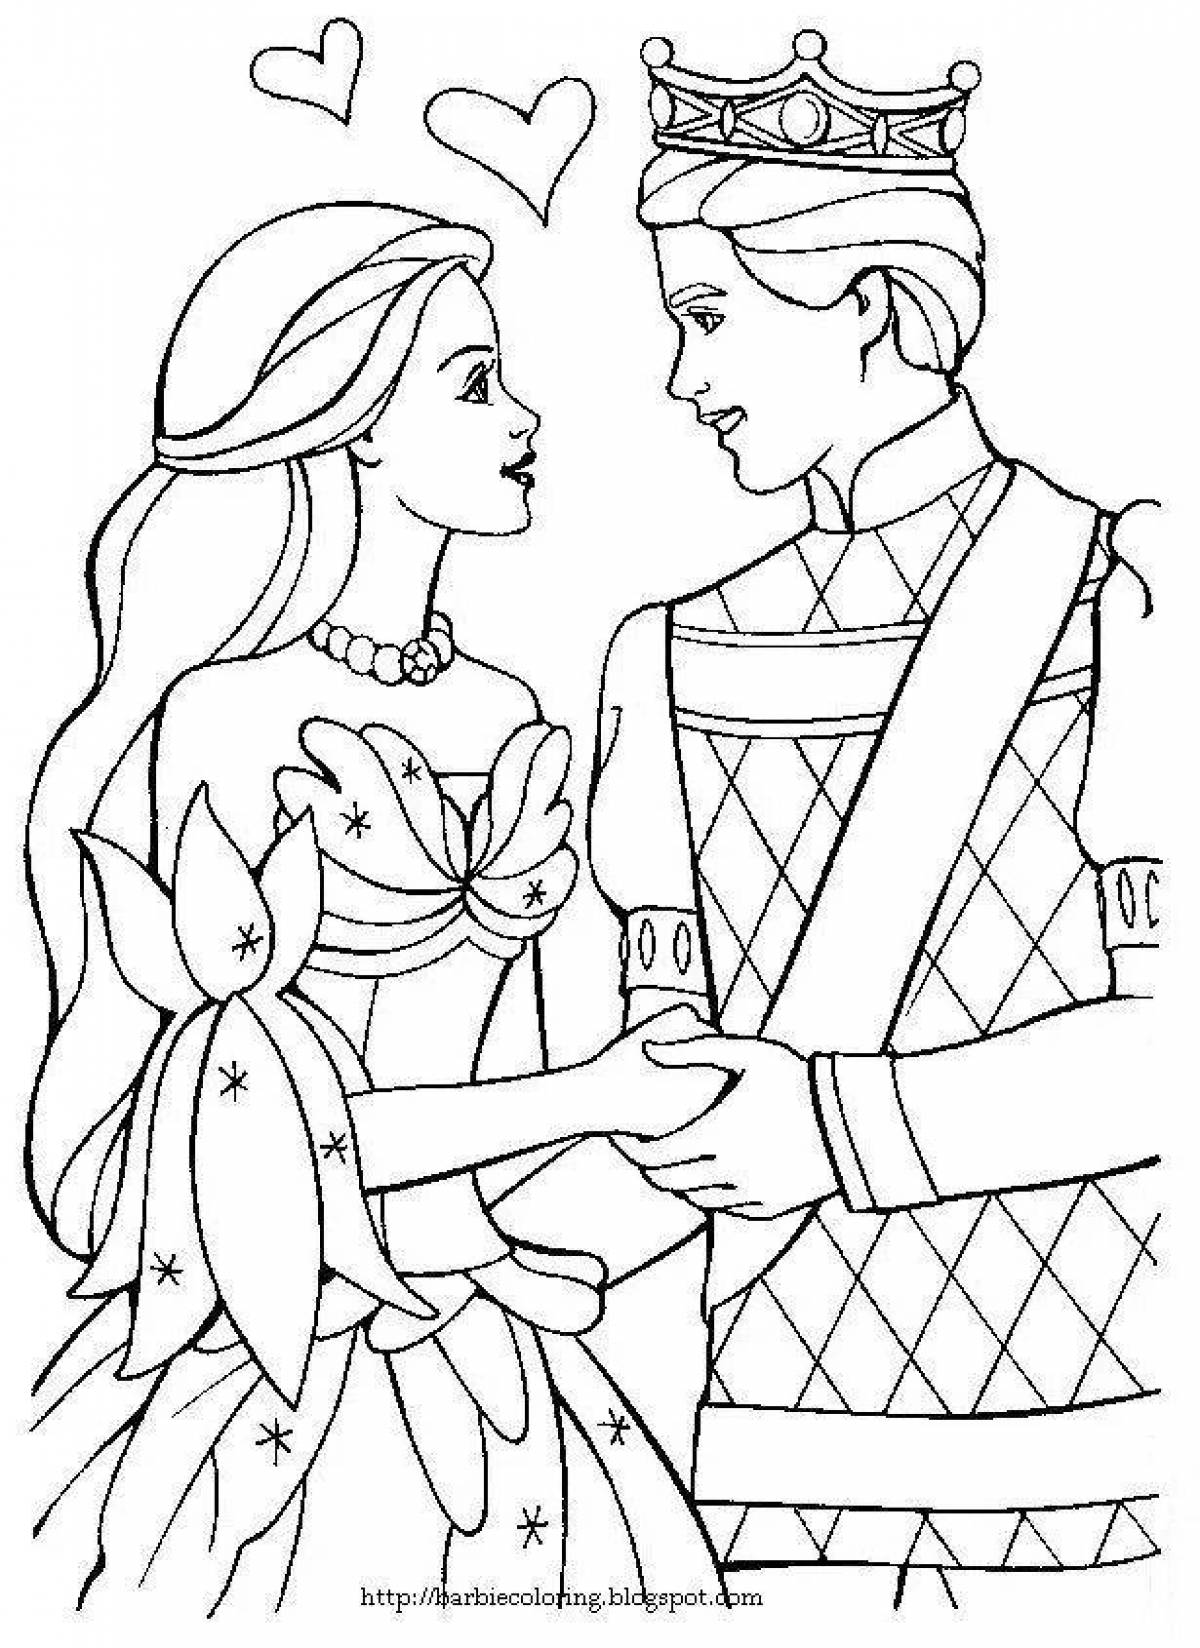 Royal coloring princess and prince for kids